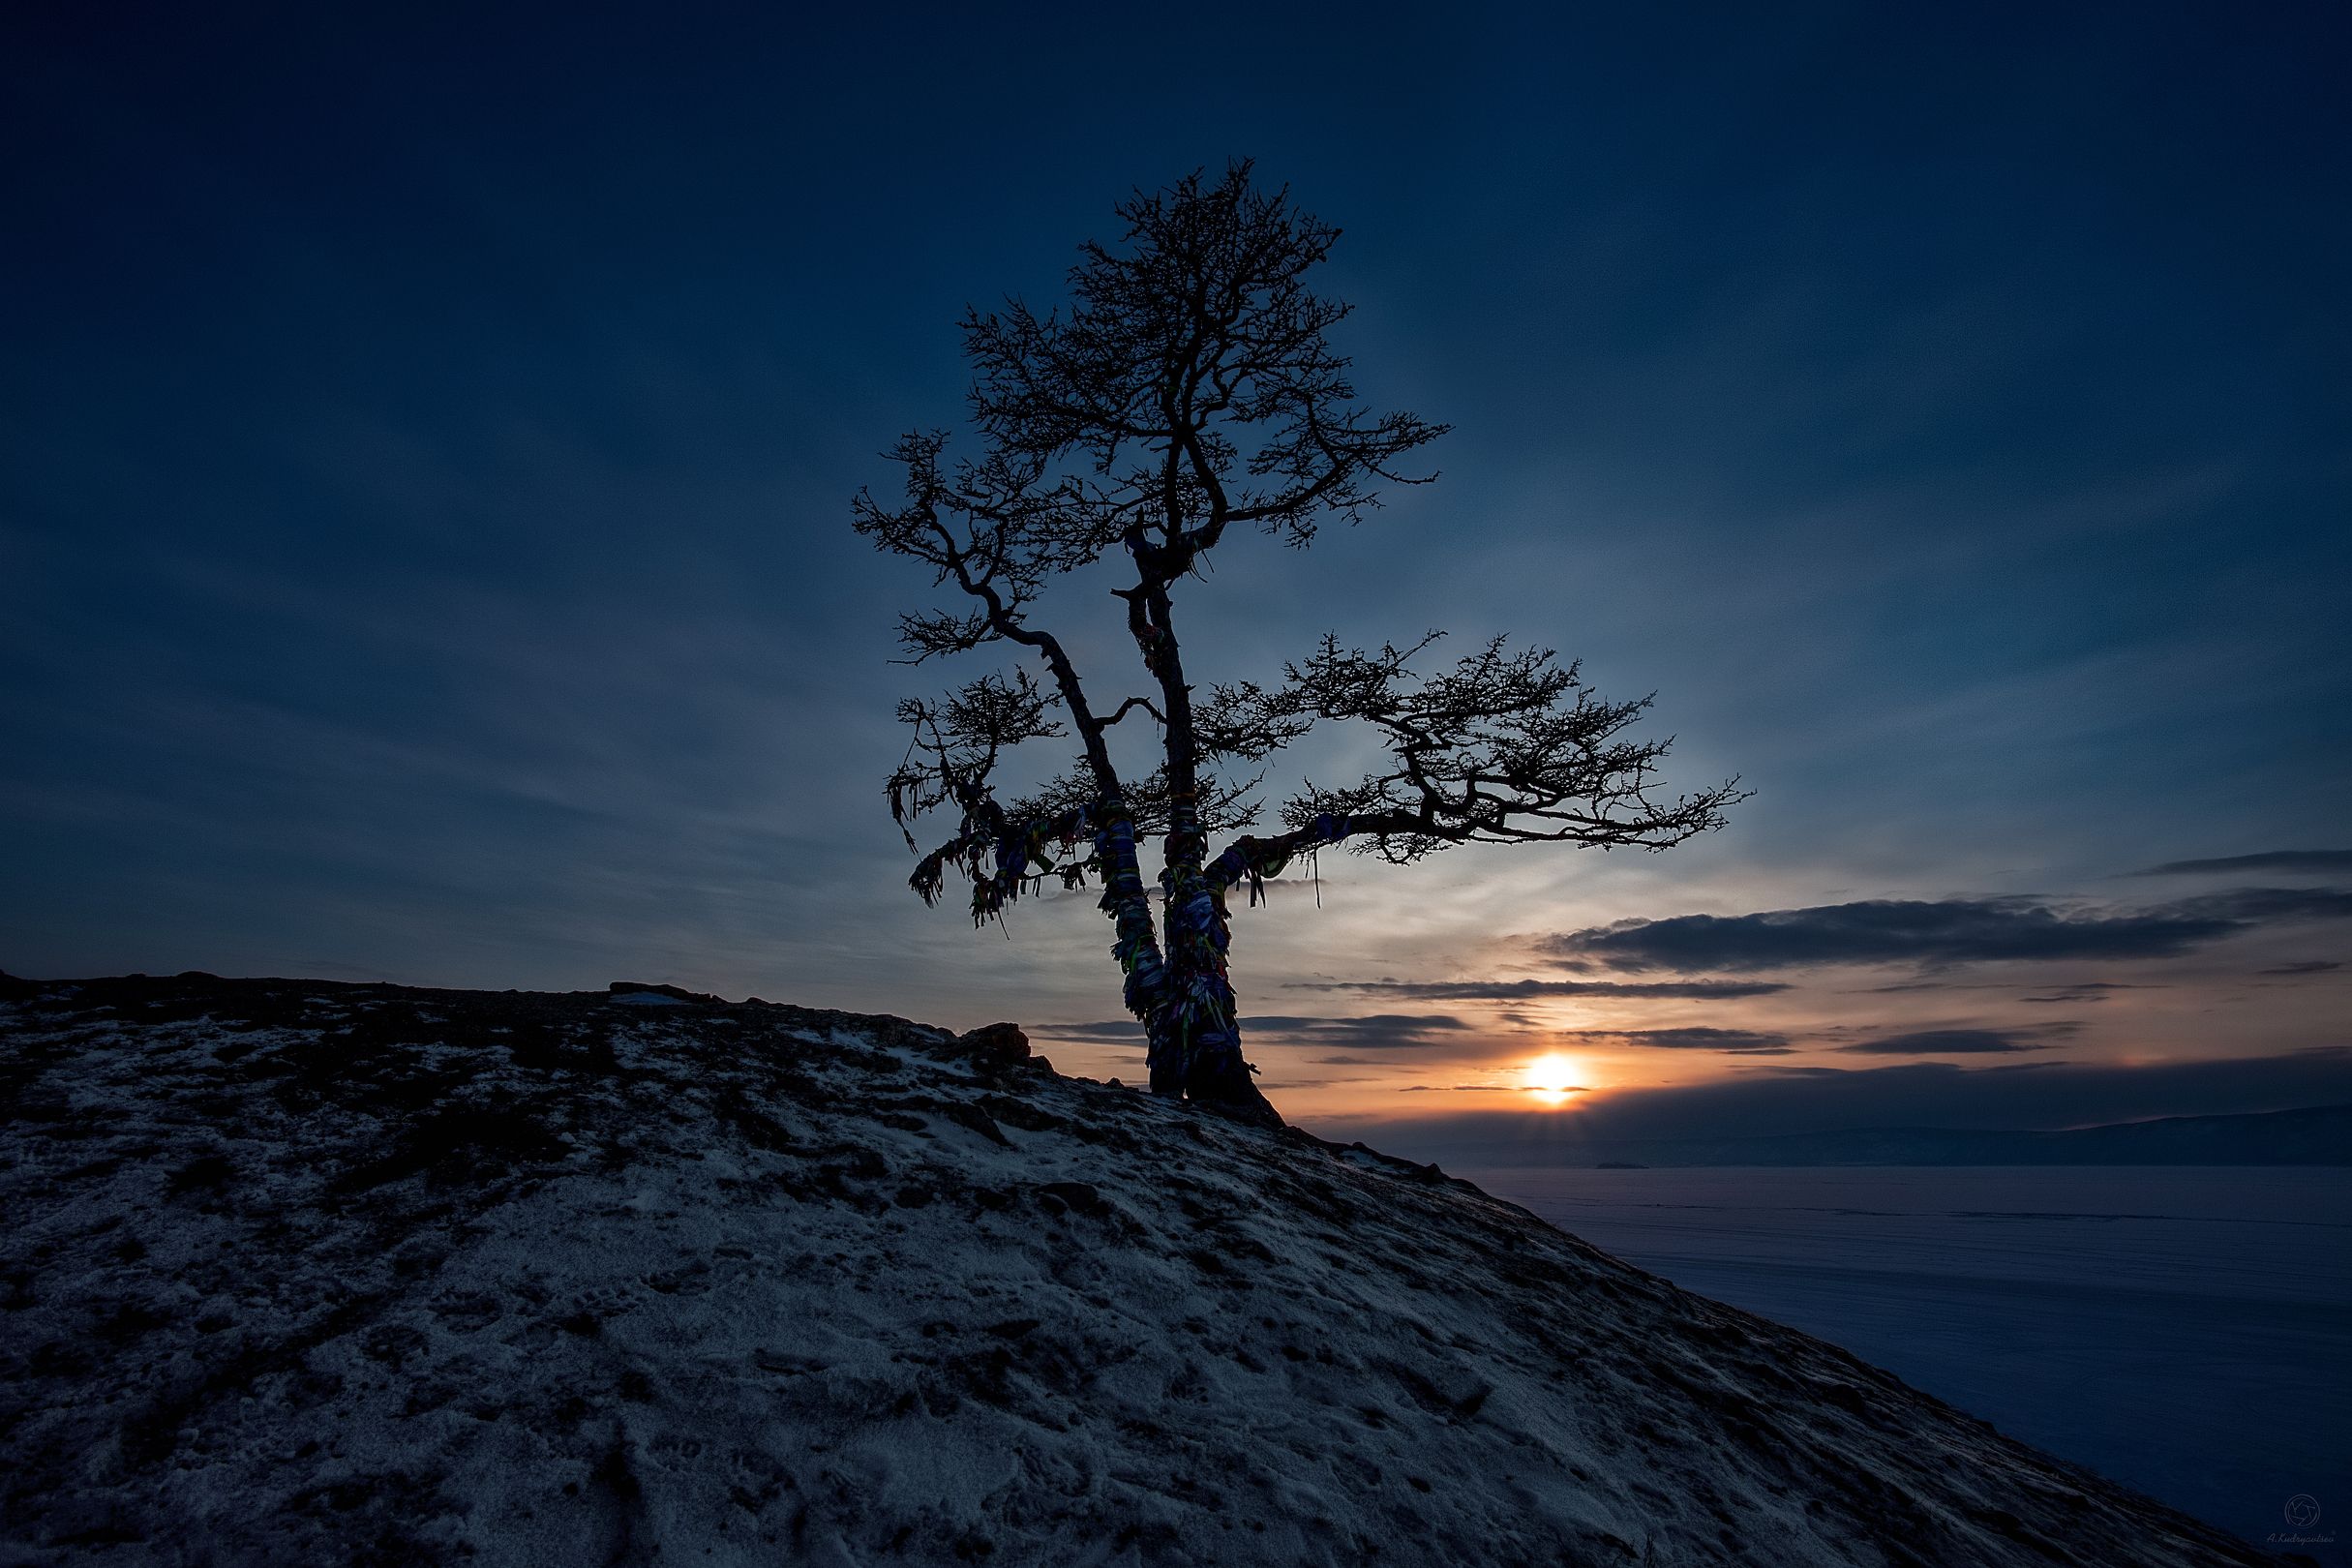 байкал, дерево, закат, пейзаж, путешествия, Анатолий Кудрявцев